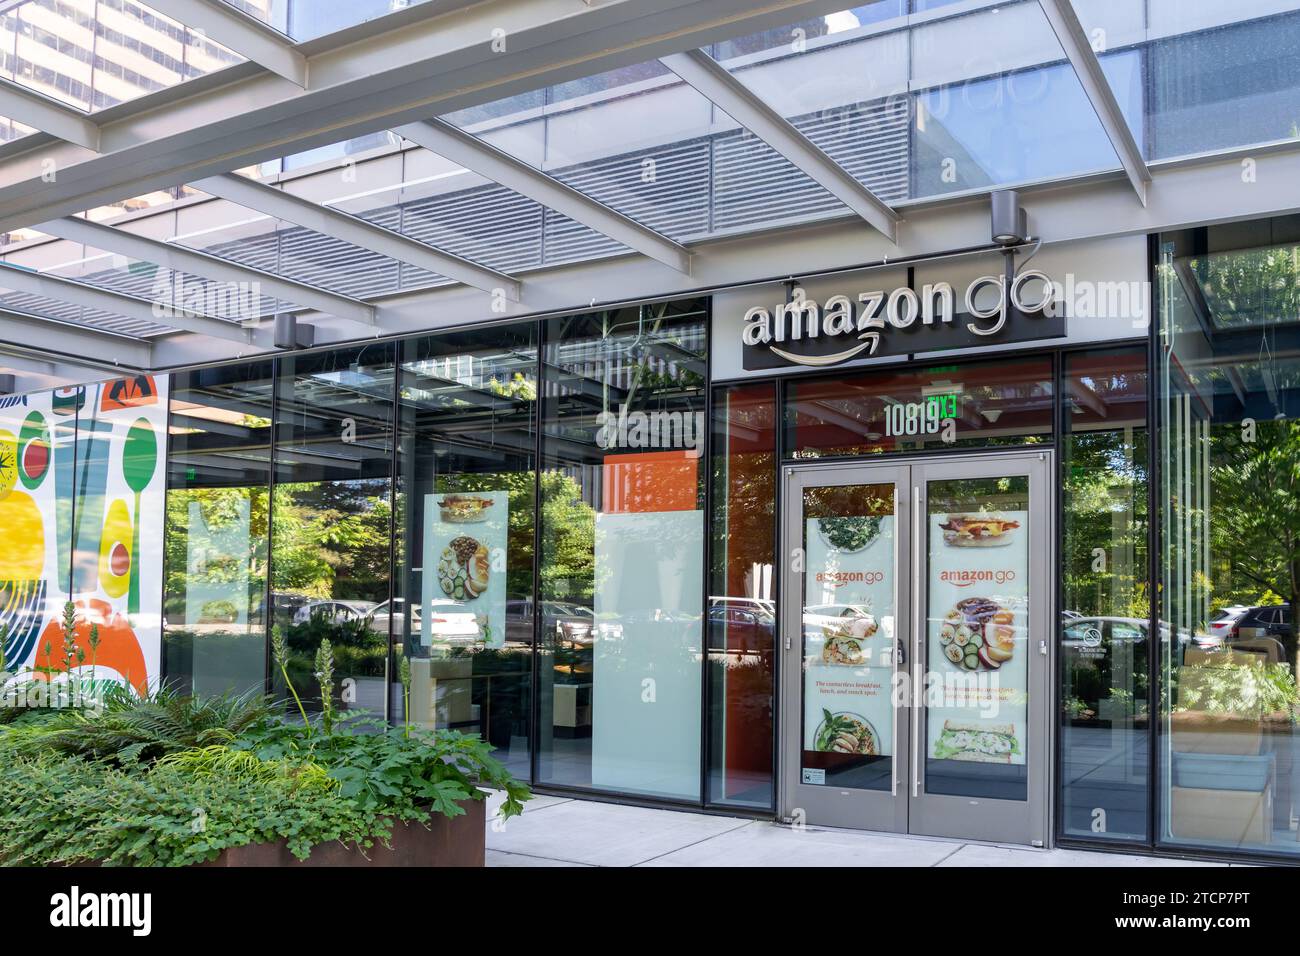 An Amazon Go store in Seattle, Washington, USA Stock Photo